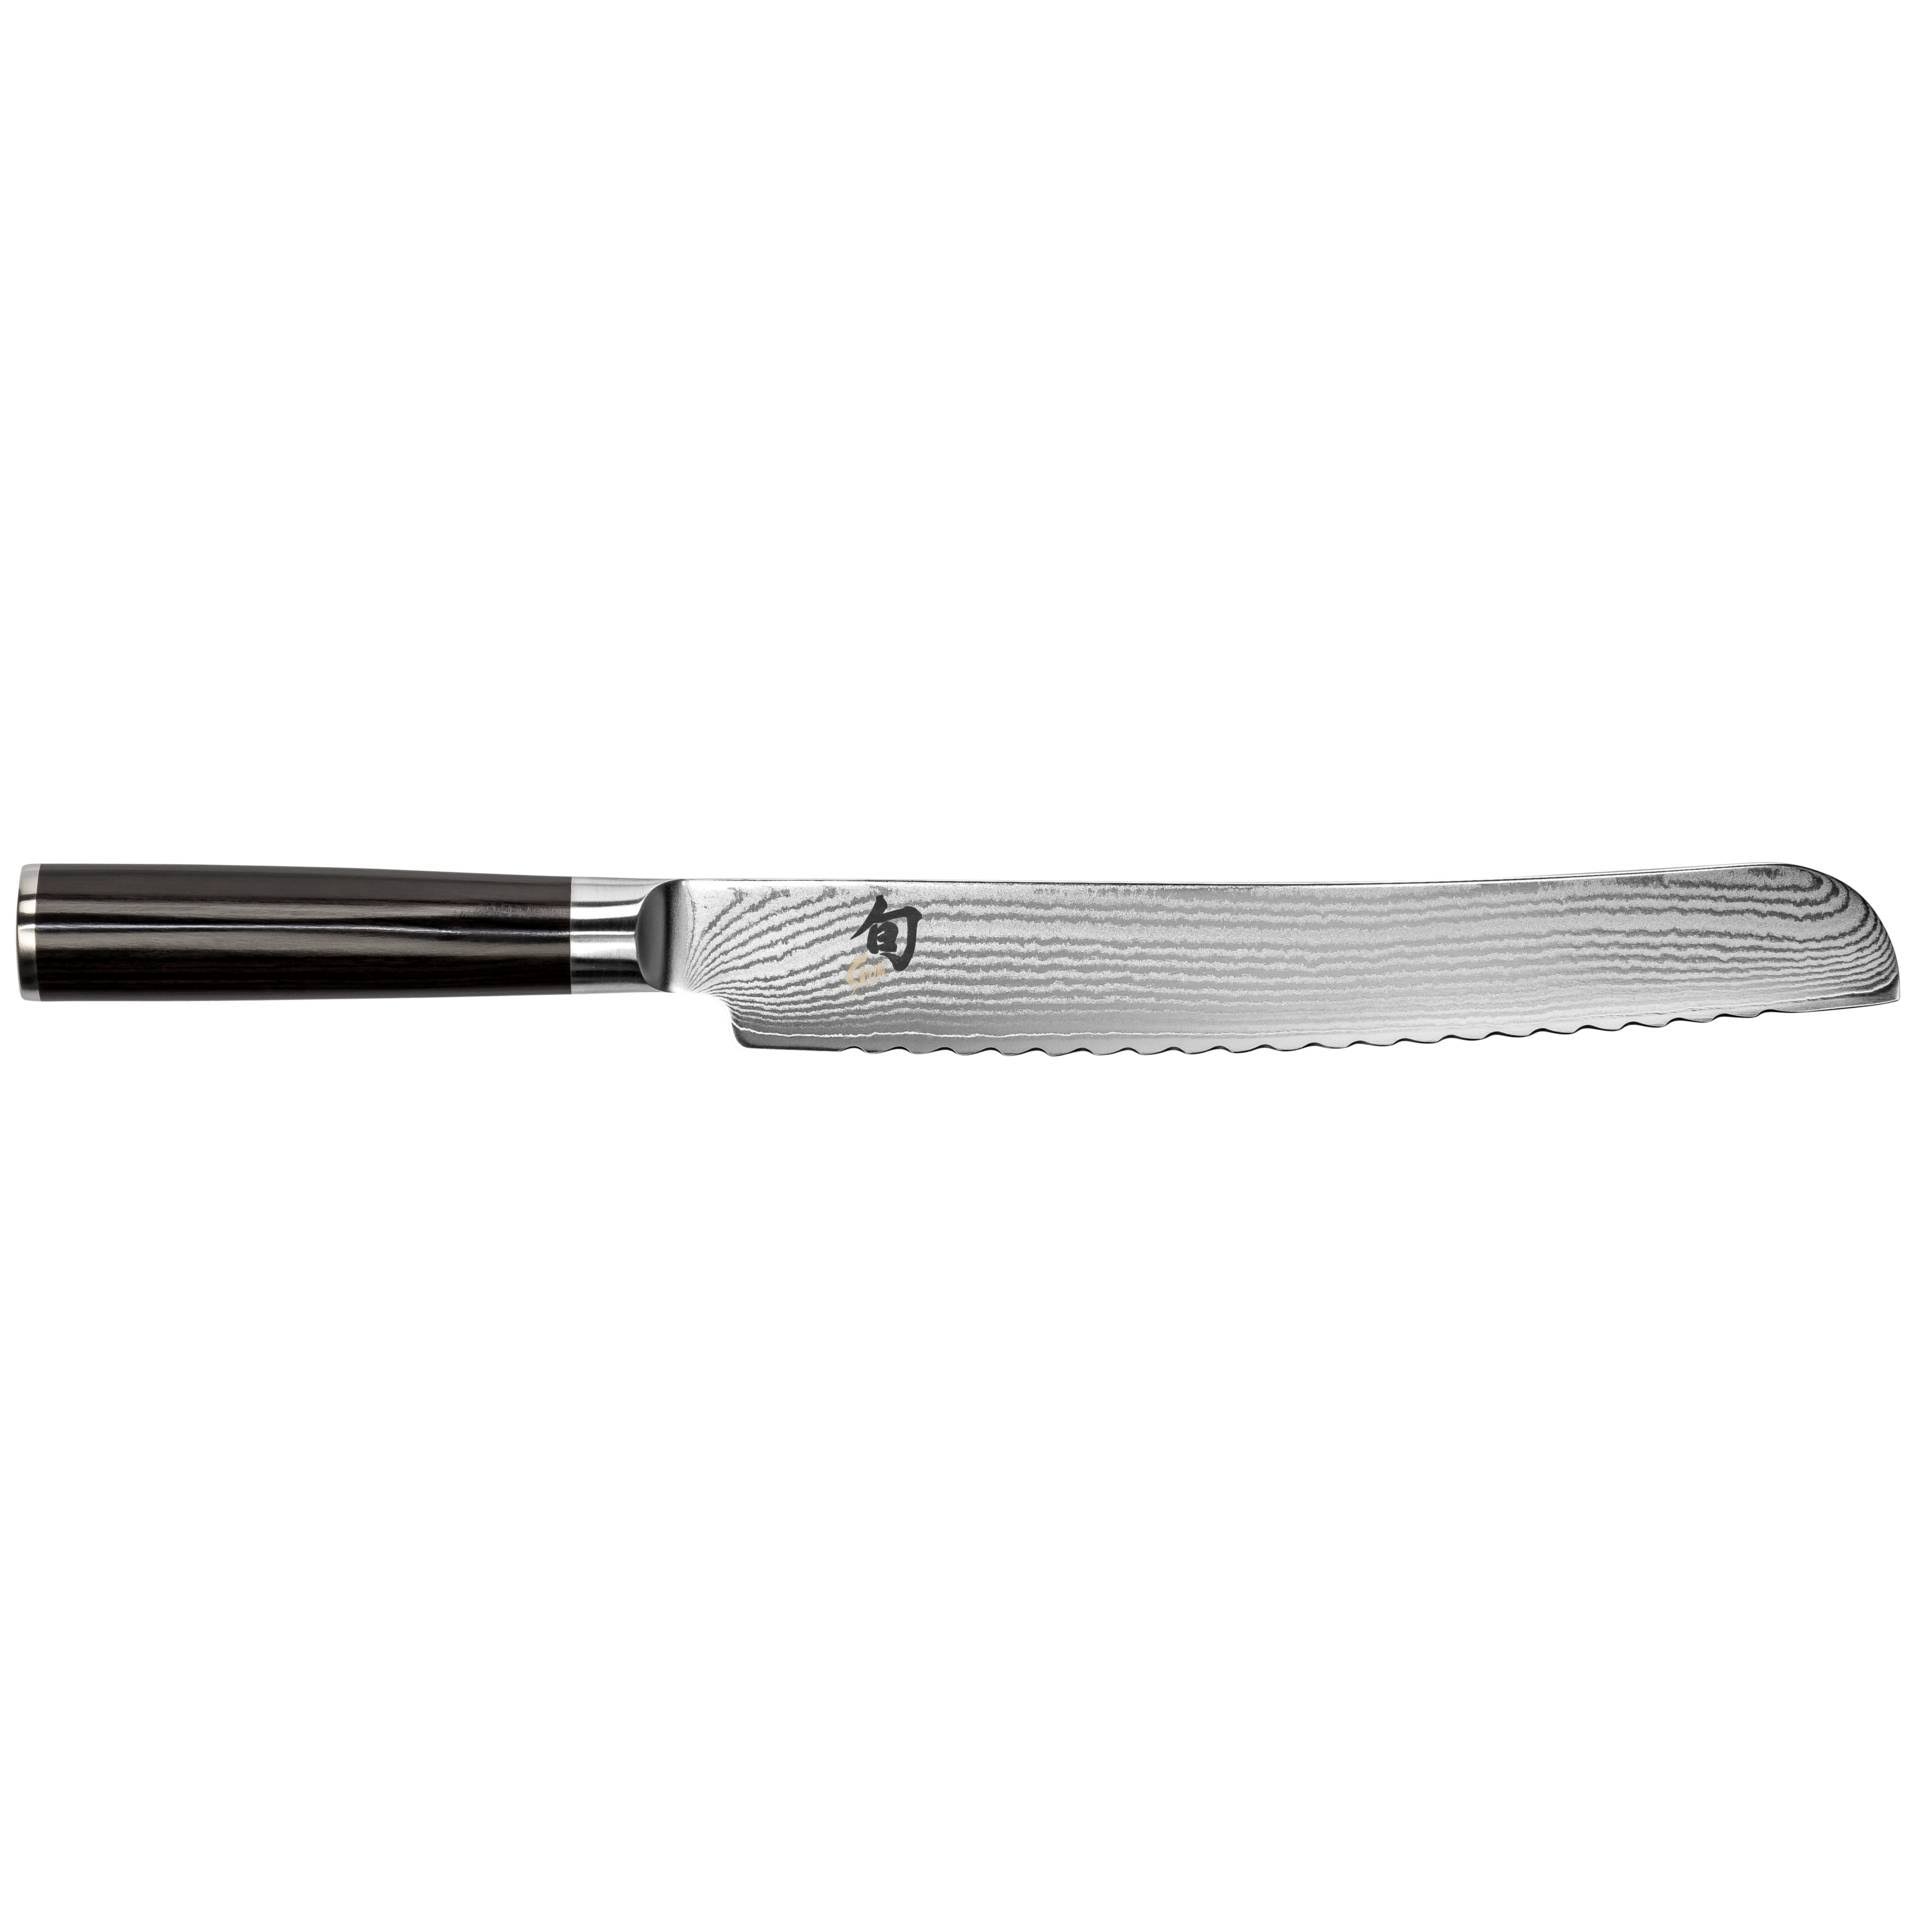 Shun Classic Bread Knife - 9"